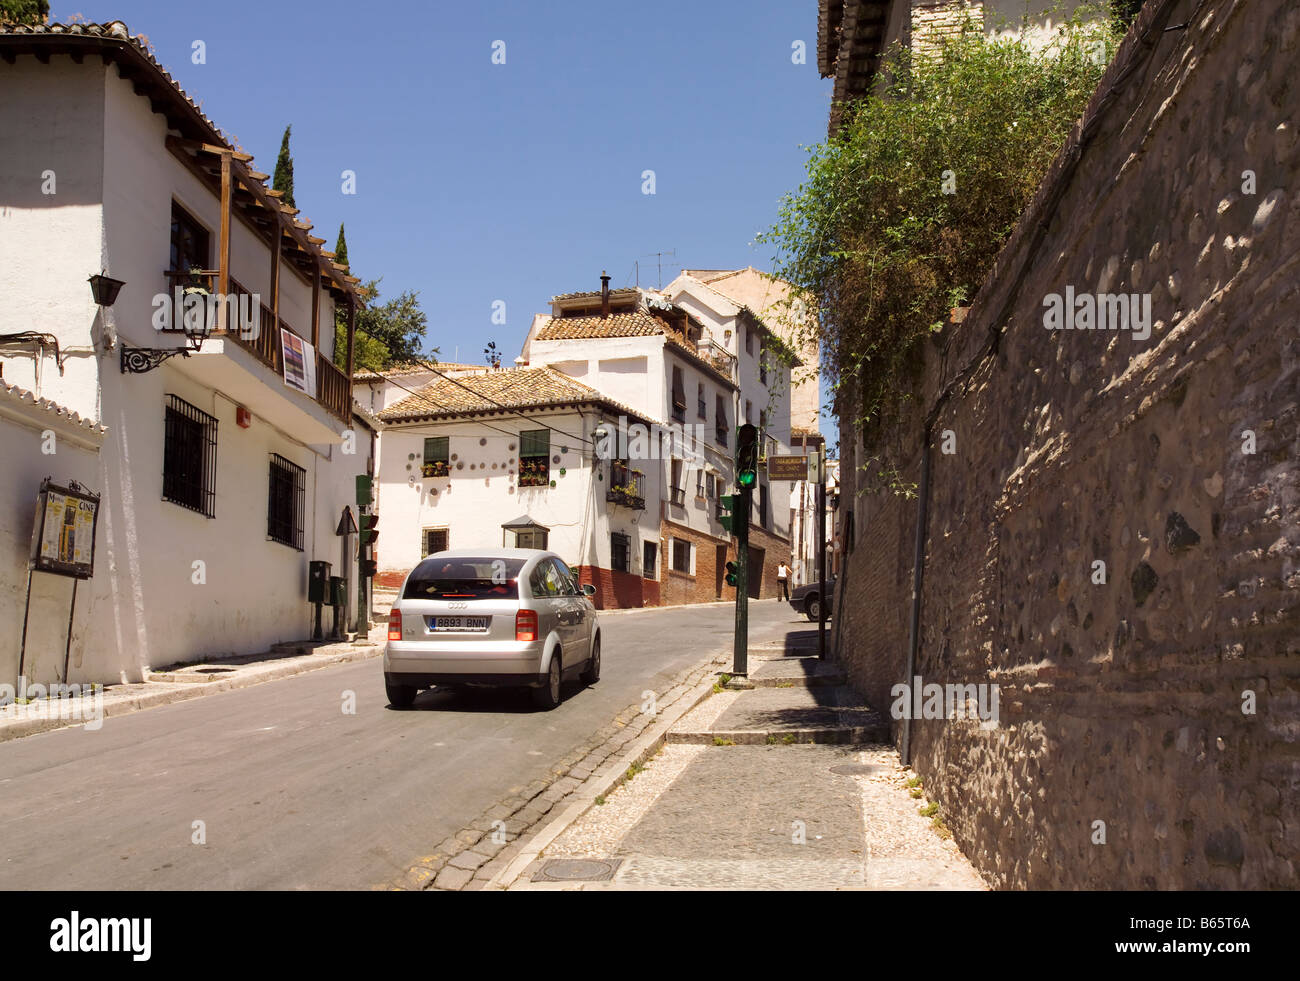 Eine Straße mit weiß gewaschen gestrichenen Häusern. Ein Auto Audi A2 vorbei an Ampeln Granada, Andalusien, Spanien, Europa. Stockfoto